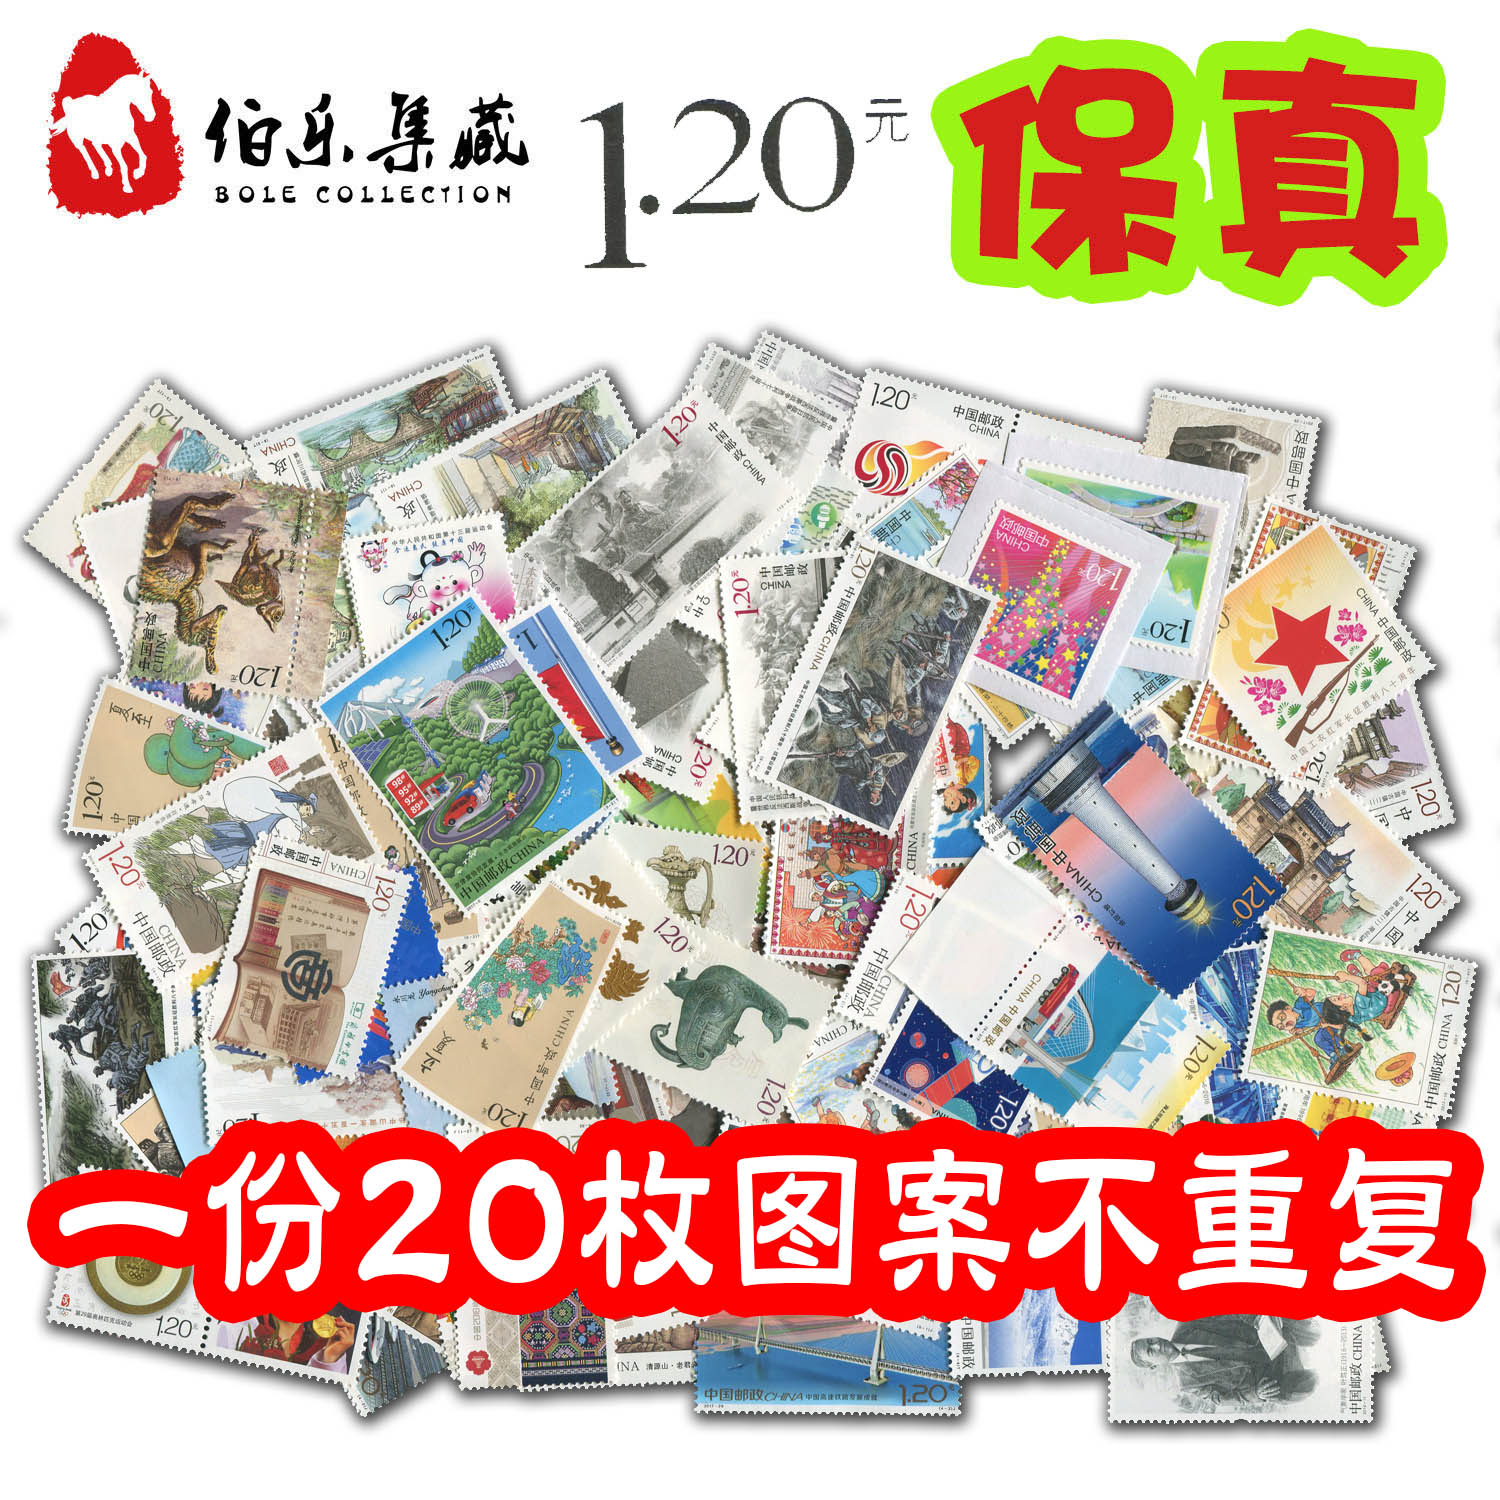 120 セント切手は、1.2 元の割引切手、バルク切手、繰り返しパターンのないポストカード 20 枚と一緒に郵送できます。